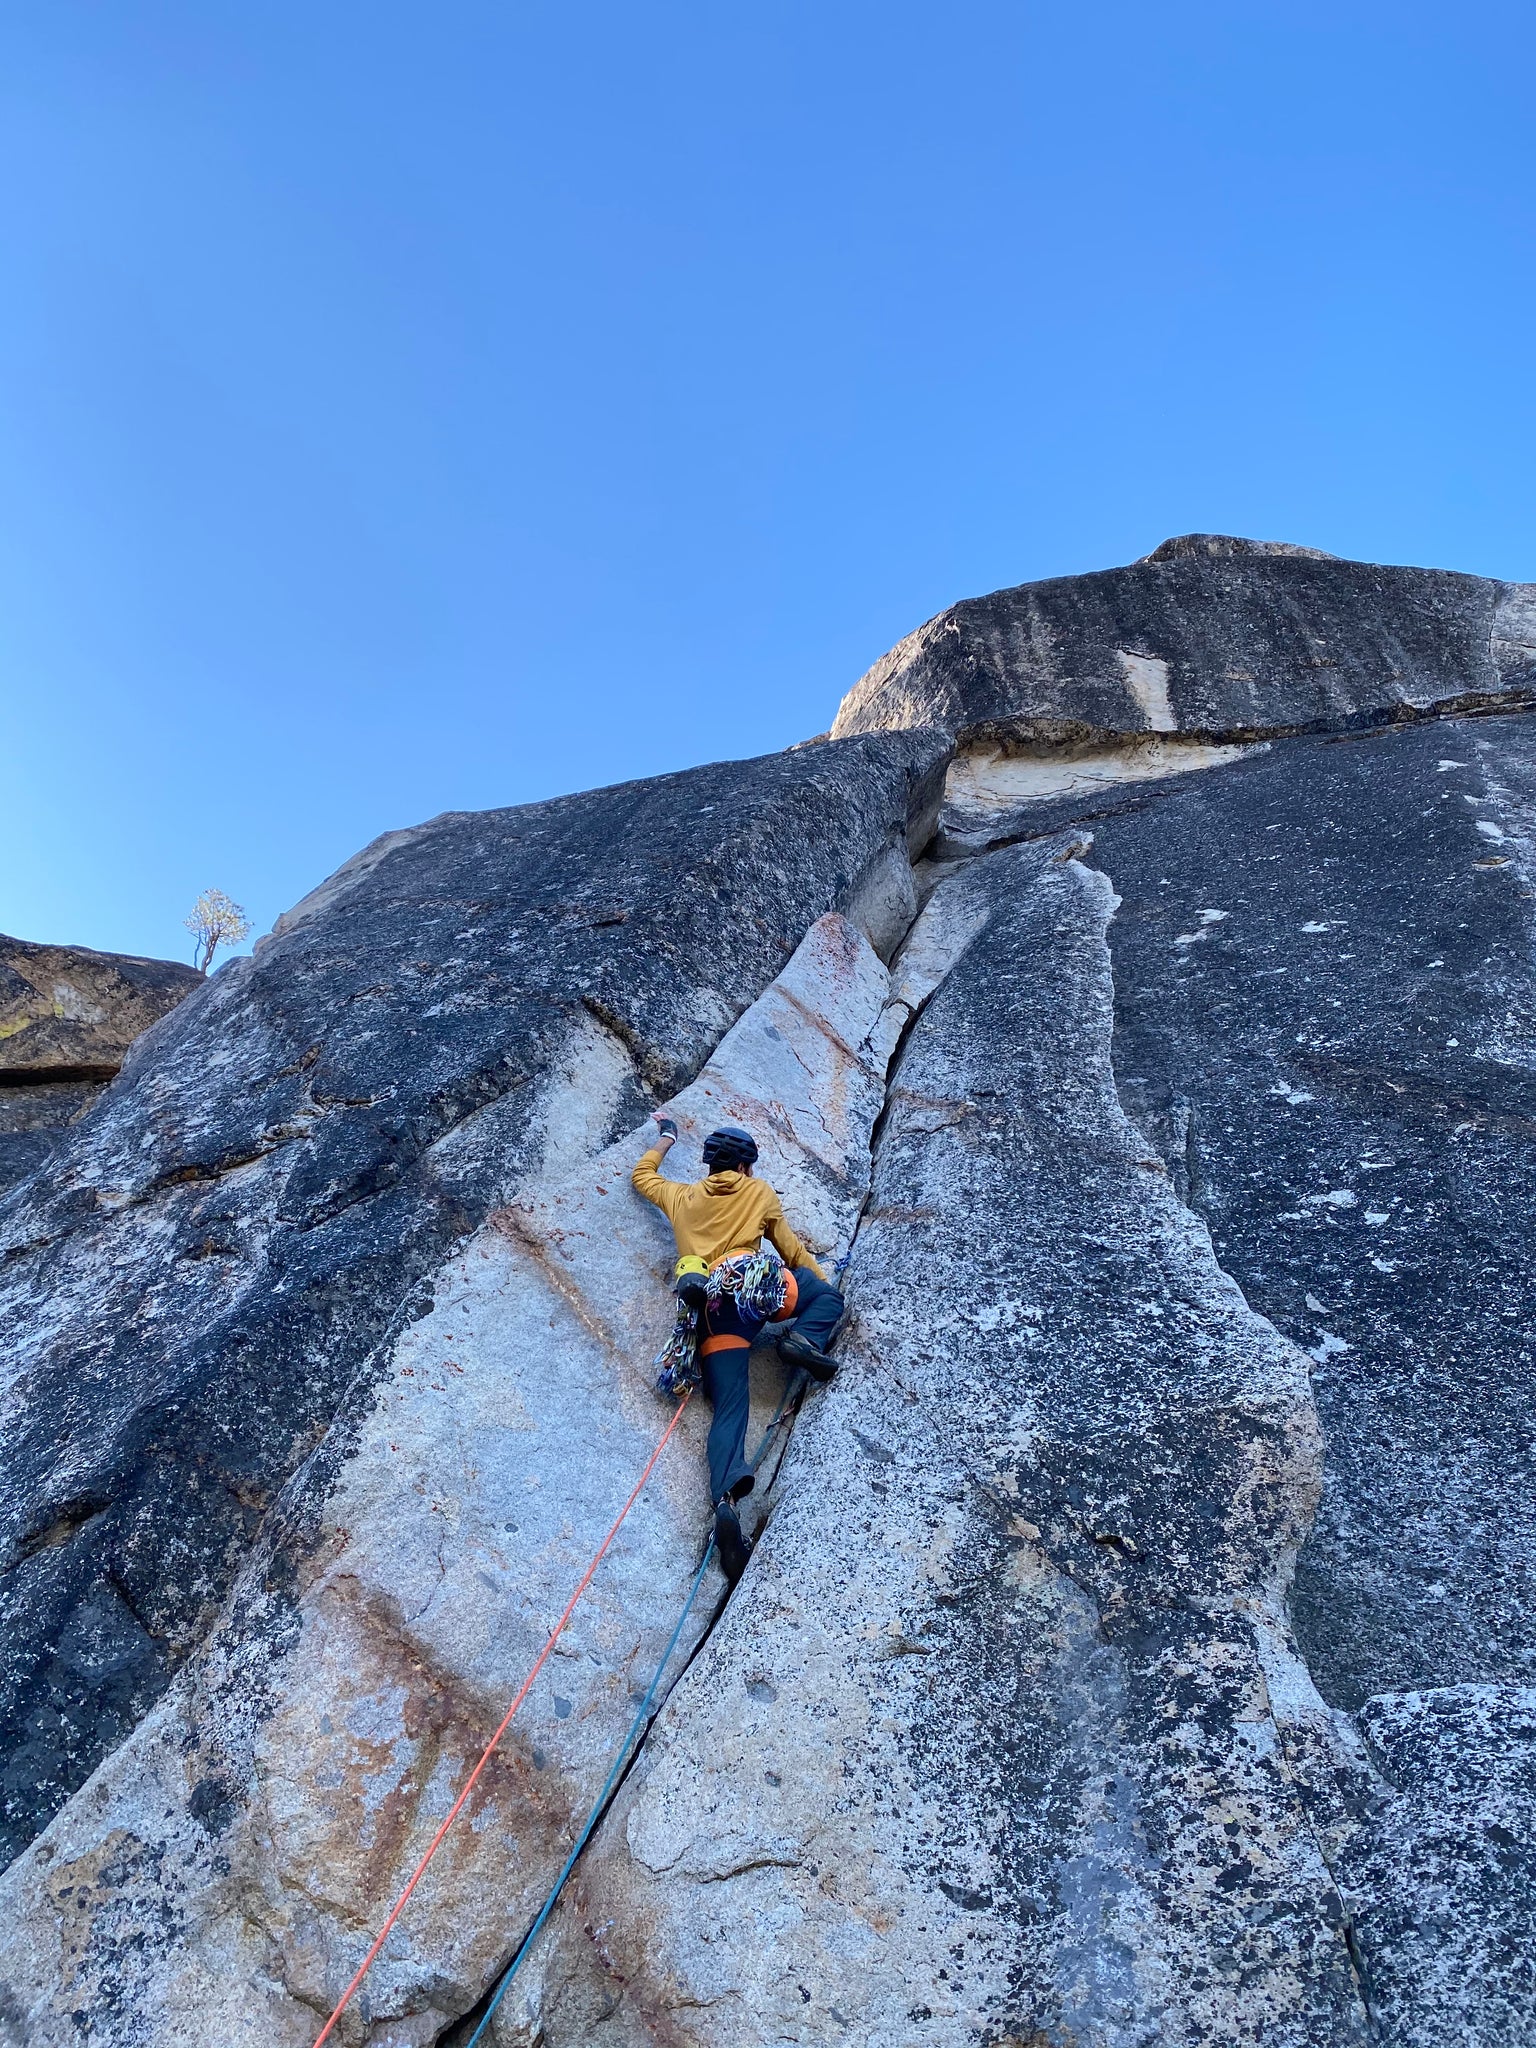 Best Spots for Beginner Rock Climbing in Tahoe